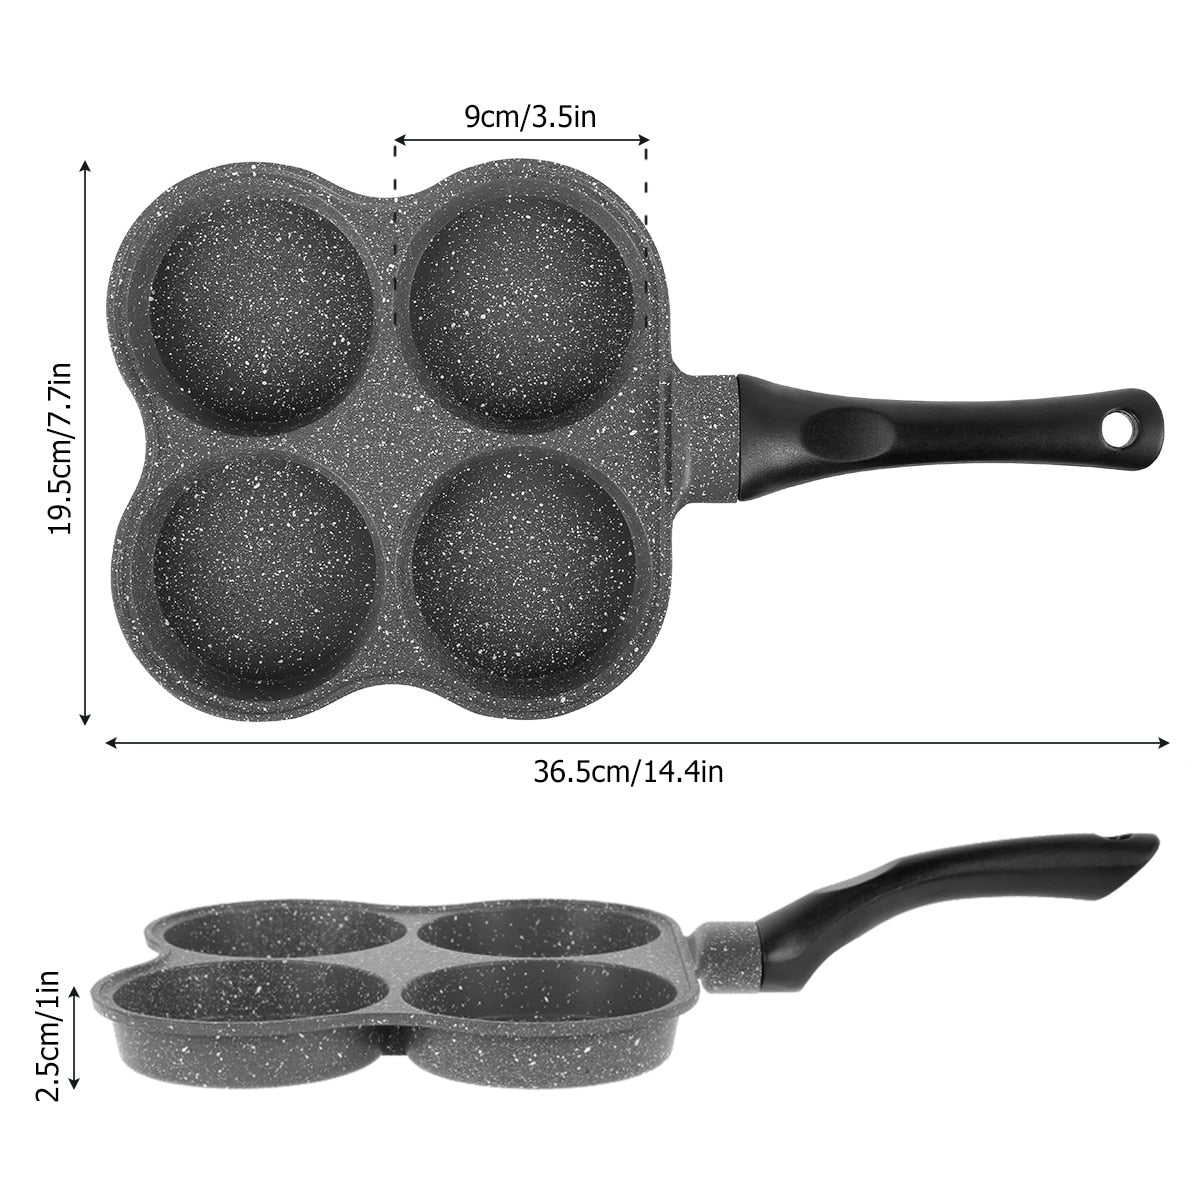 4 Holes Frying Pan - essentialslifeshop